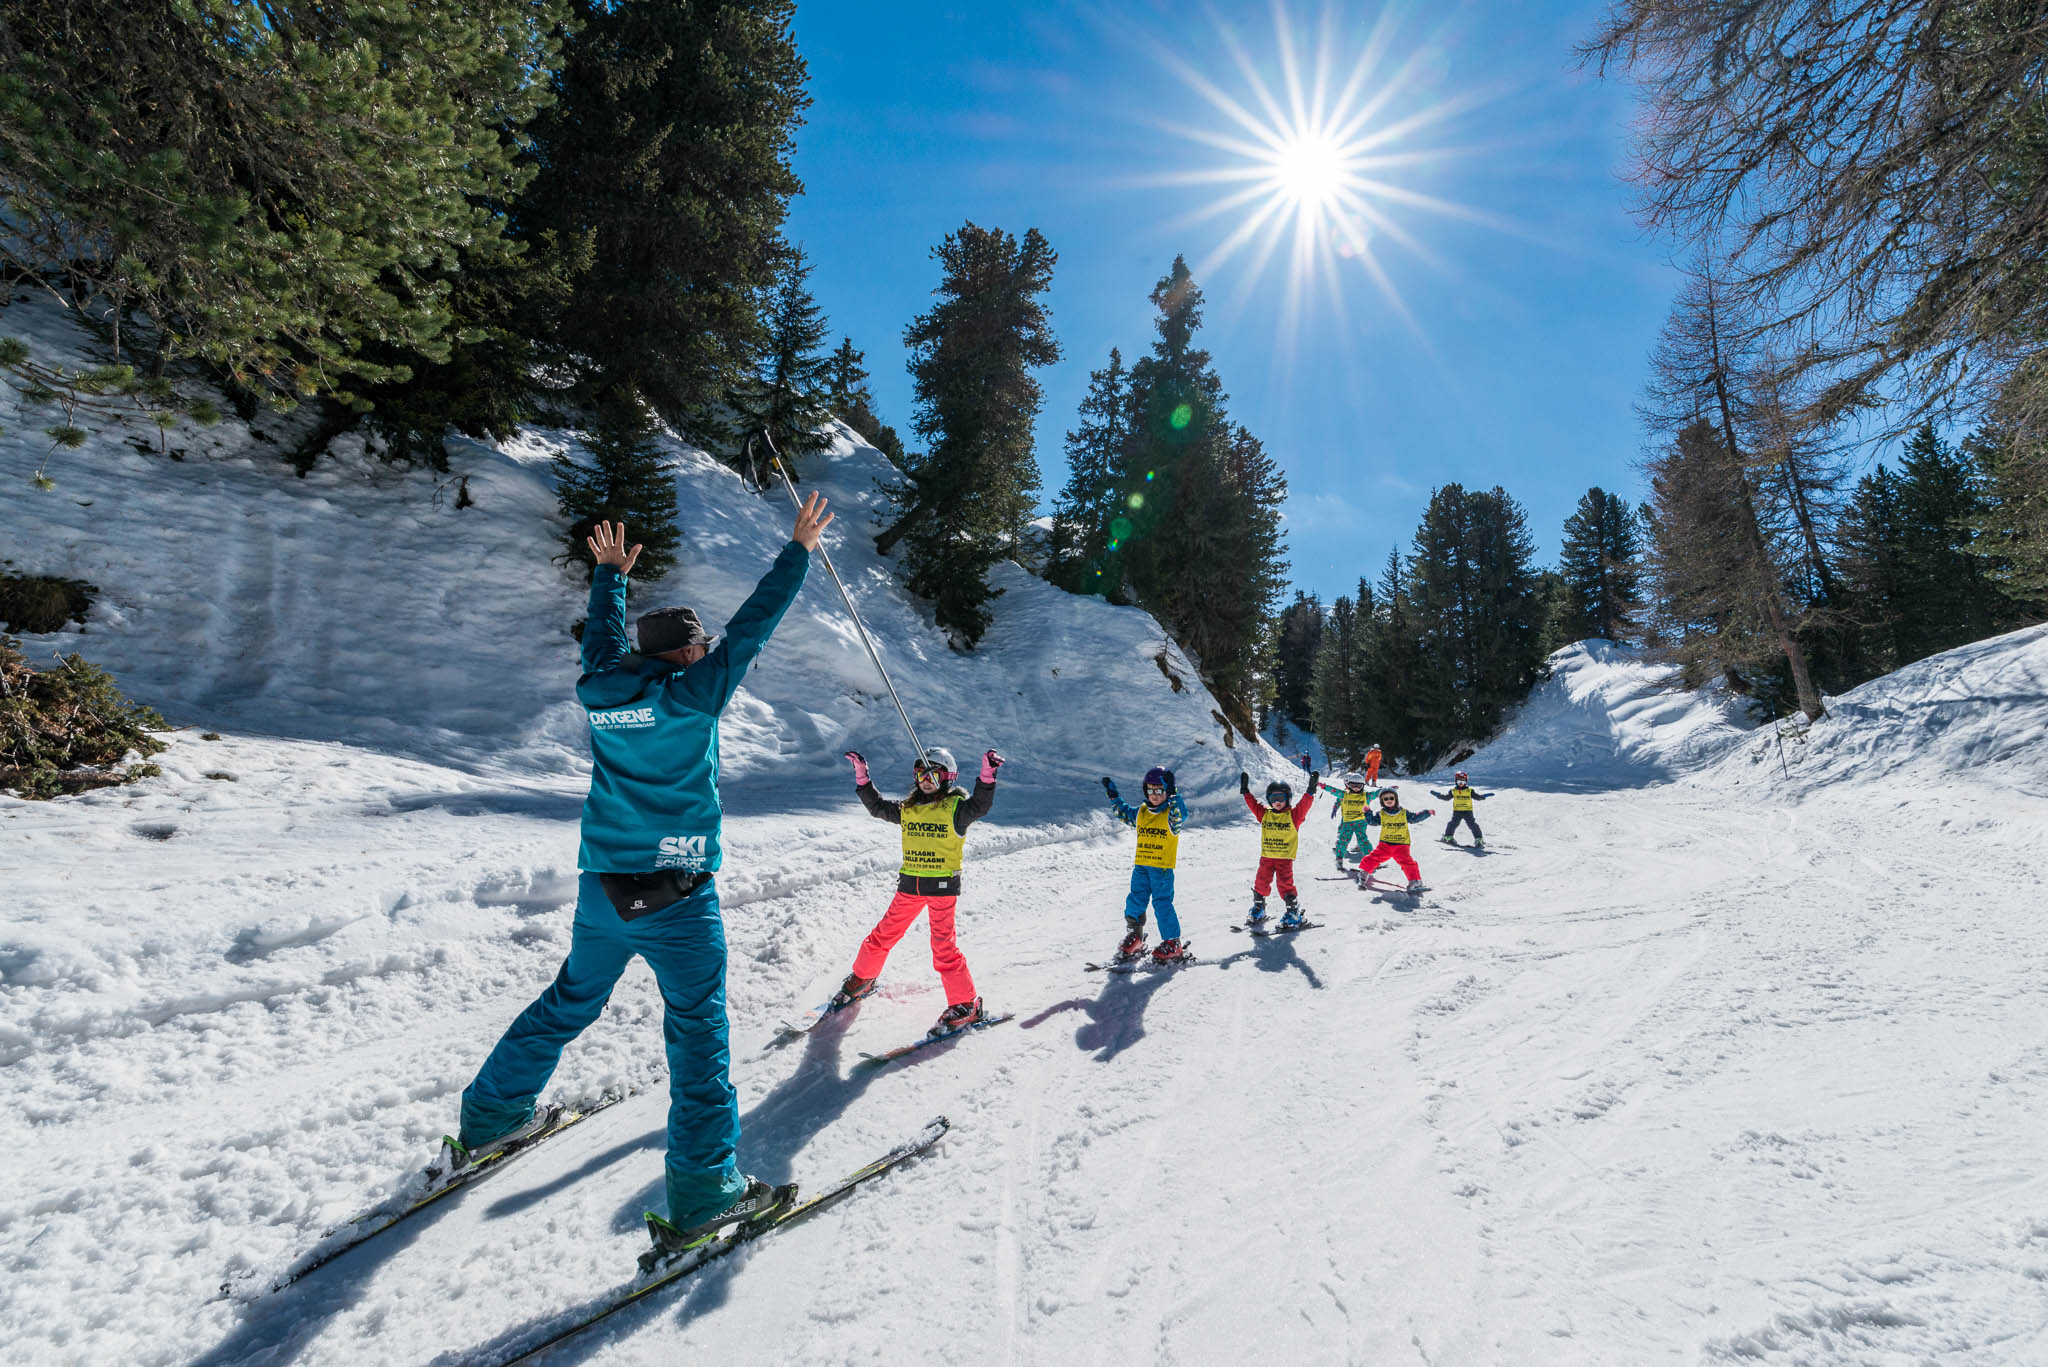 Premier séjour au ski avec enfants : nos conseils